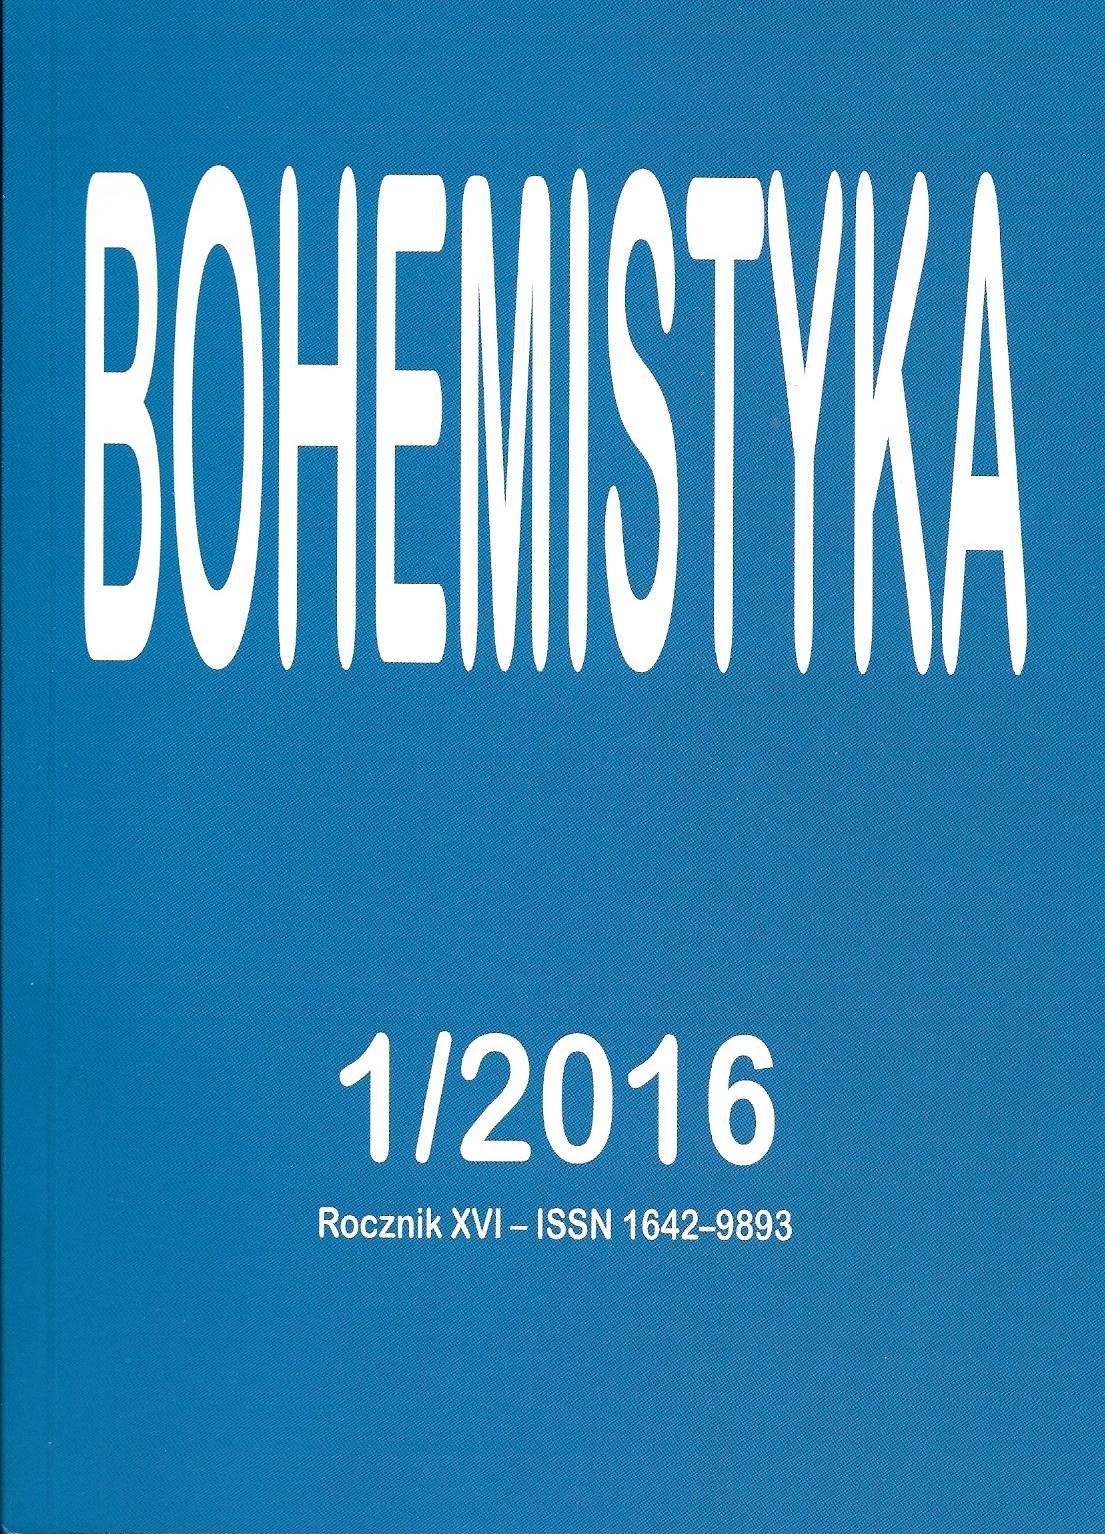 Wojna – retoryka walki, red. Joanna Goszczyńska, Wydział Polonistyki Uniwersytetu Warszawskiego, Warszawa 2015, 258 s. ISBN 978–83–64111–18–1